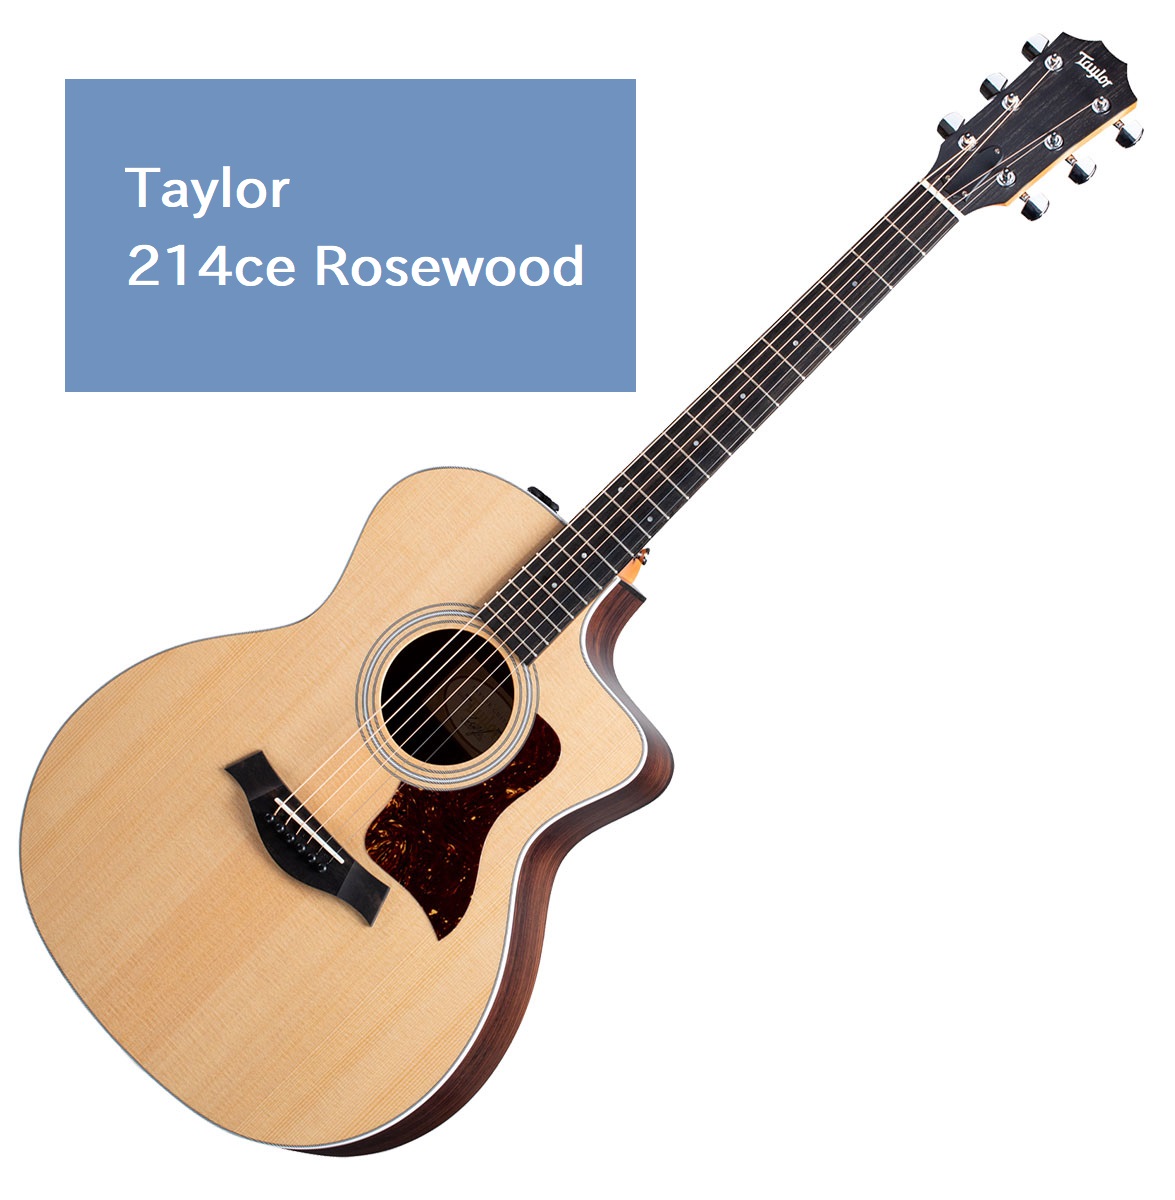 木材の質感をダイレクトに感じる事ができる人気のモデル！ 島村楽器大分店に、Taylor(テイラー)のエレアコギター「214ce Rosewood」が入荷致しました！ こちらの214ce Rosewoodは抜群の弾きやすさと優れたコストパフォーマンスを実現。ボディトップには定番のシトカスプルース、サイ […]